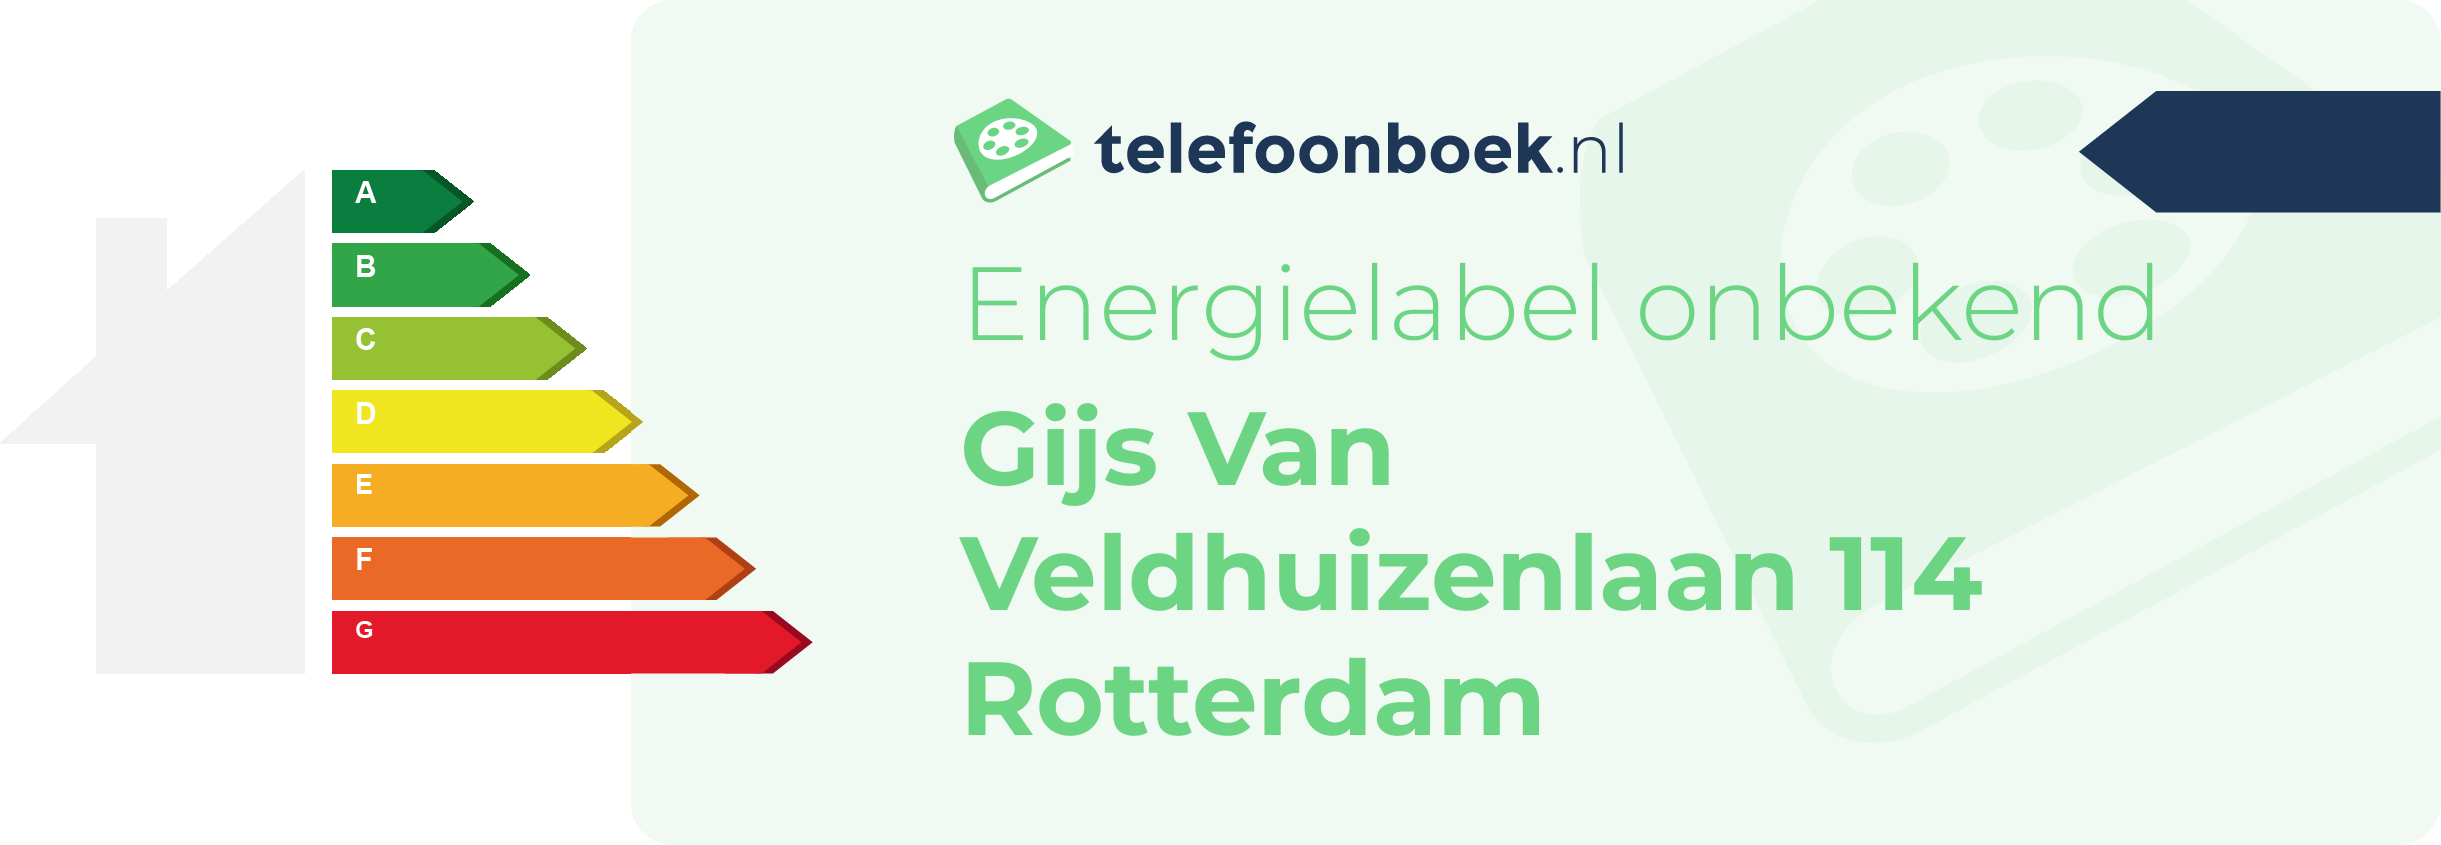 Energielabel Gijs Van Veldhuizenlaan 114 Rotterdam